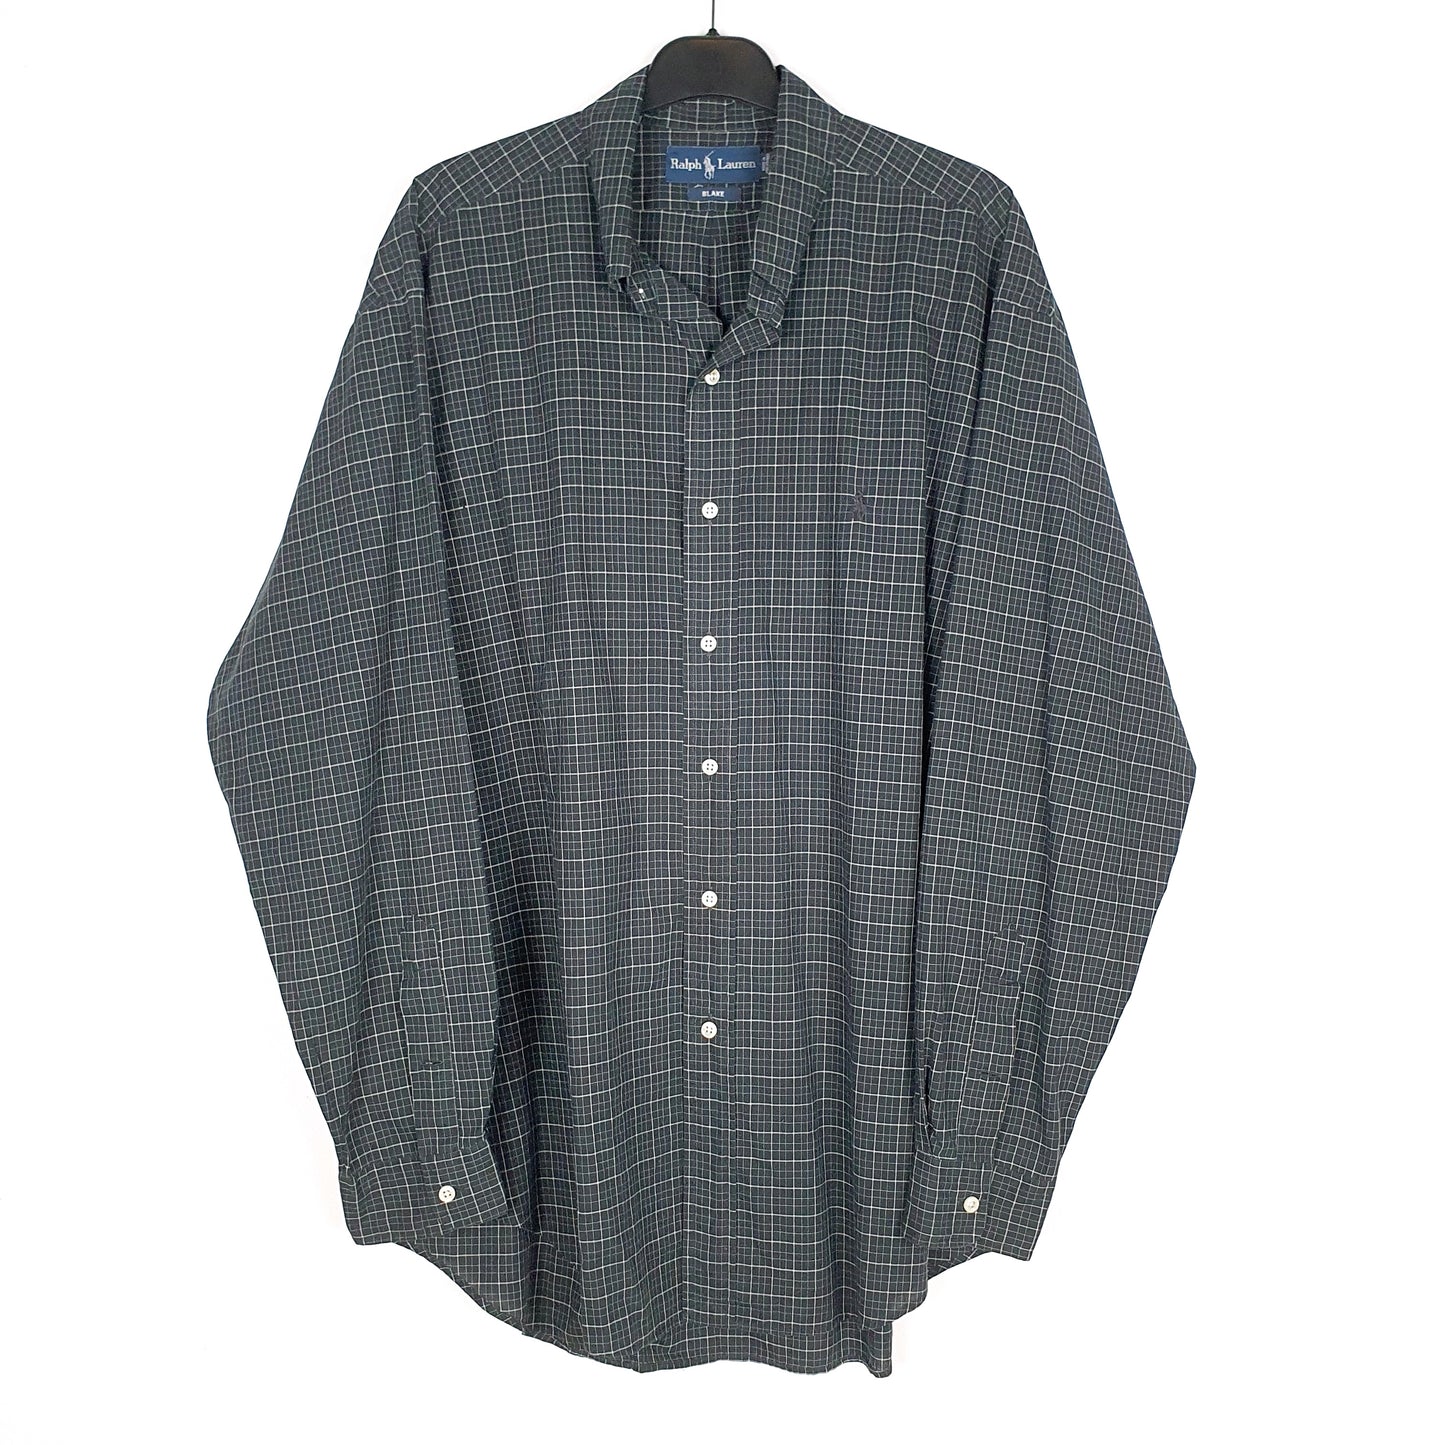 Black Polo Ralph Lauren Long Sleeve Shirt